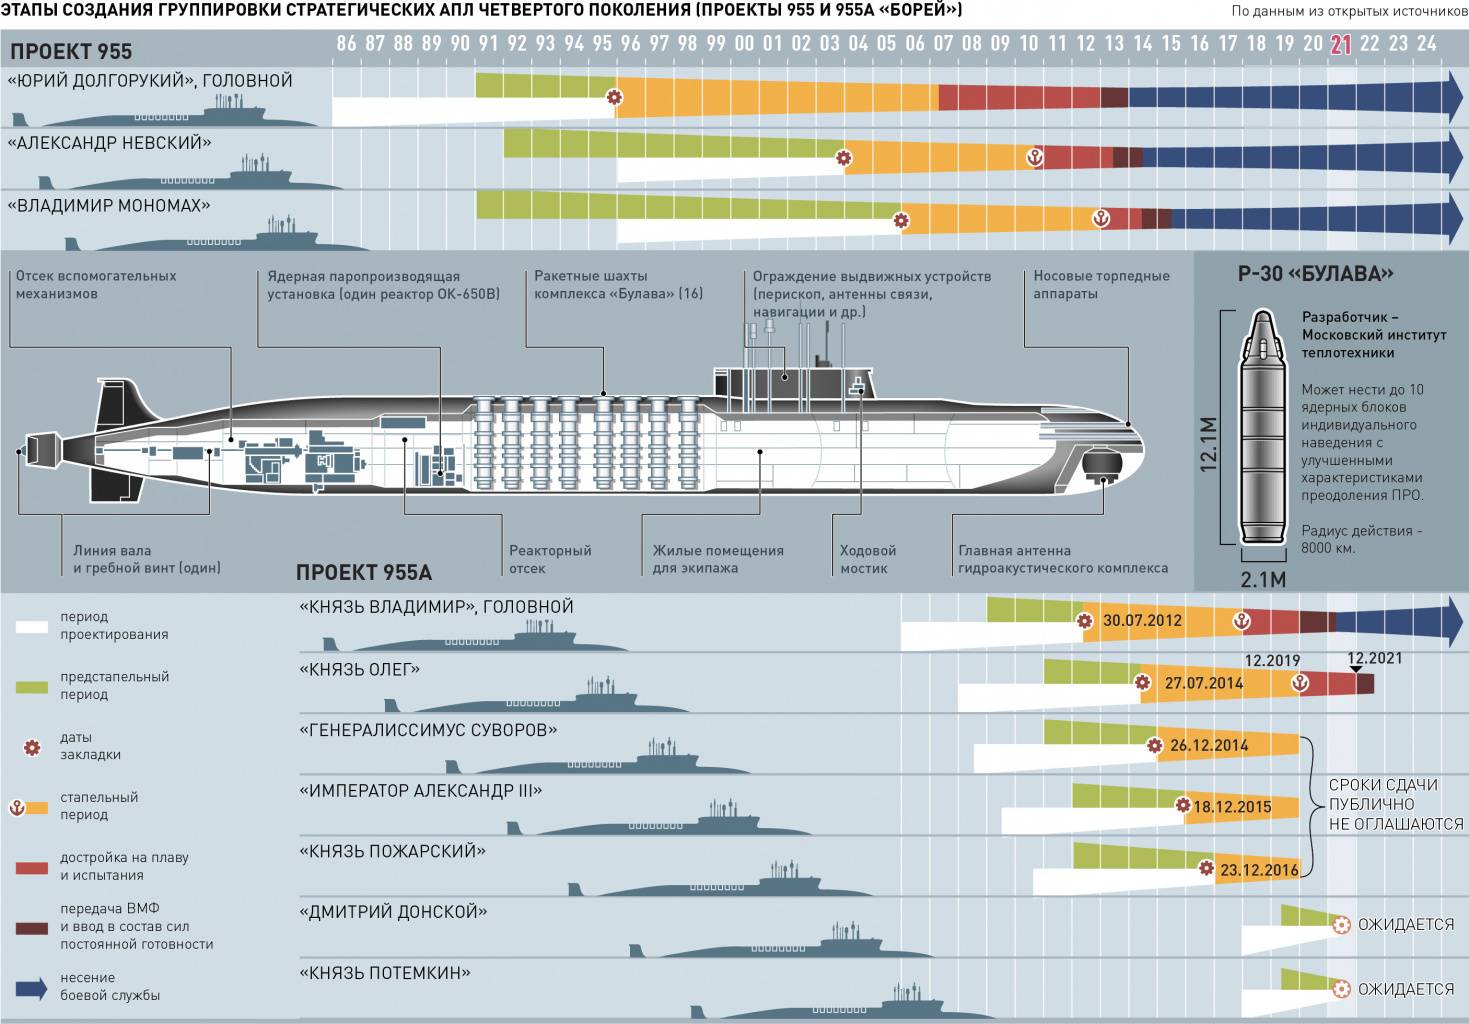 Подводные лодки проекта 955 борей